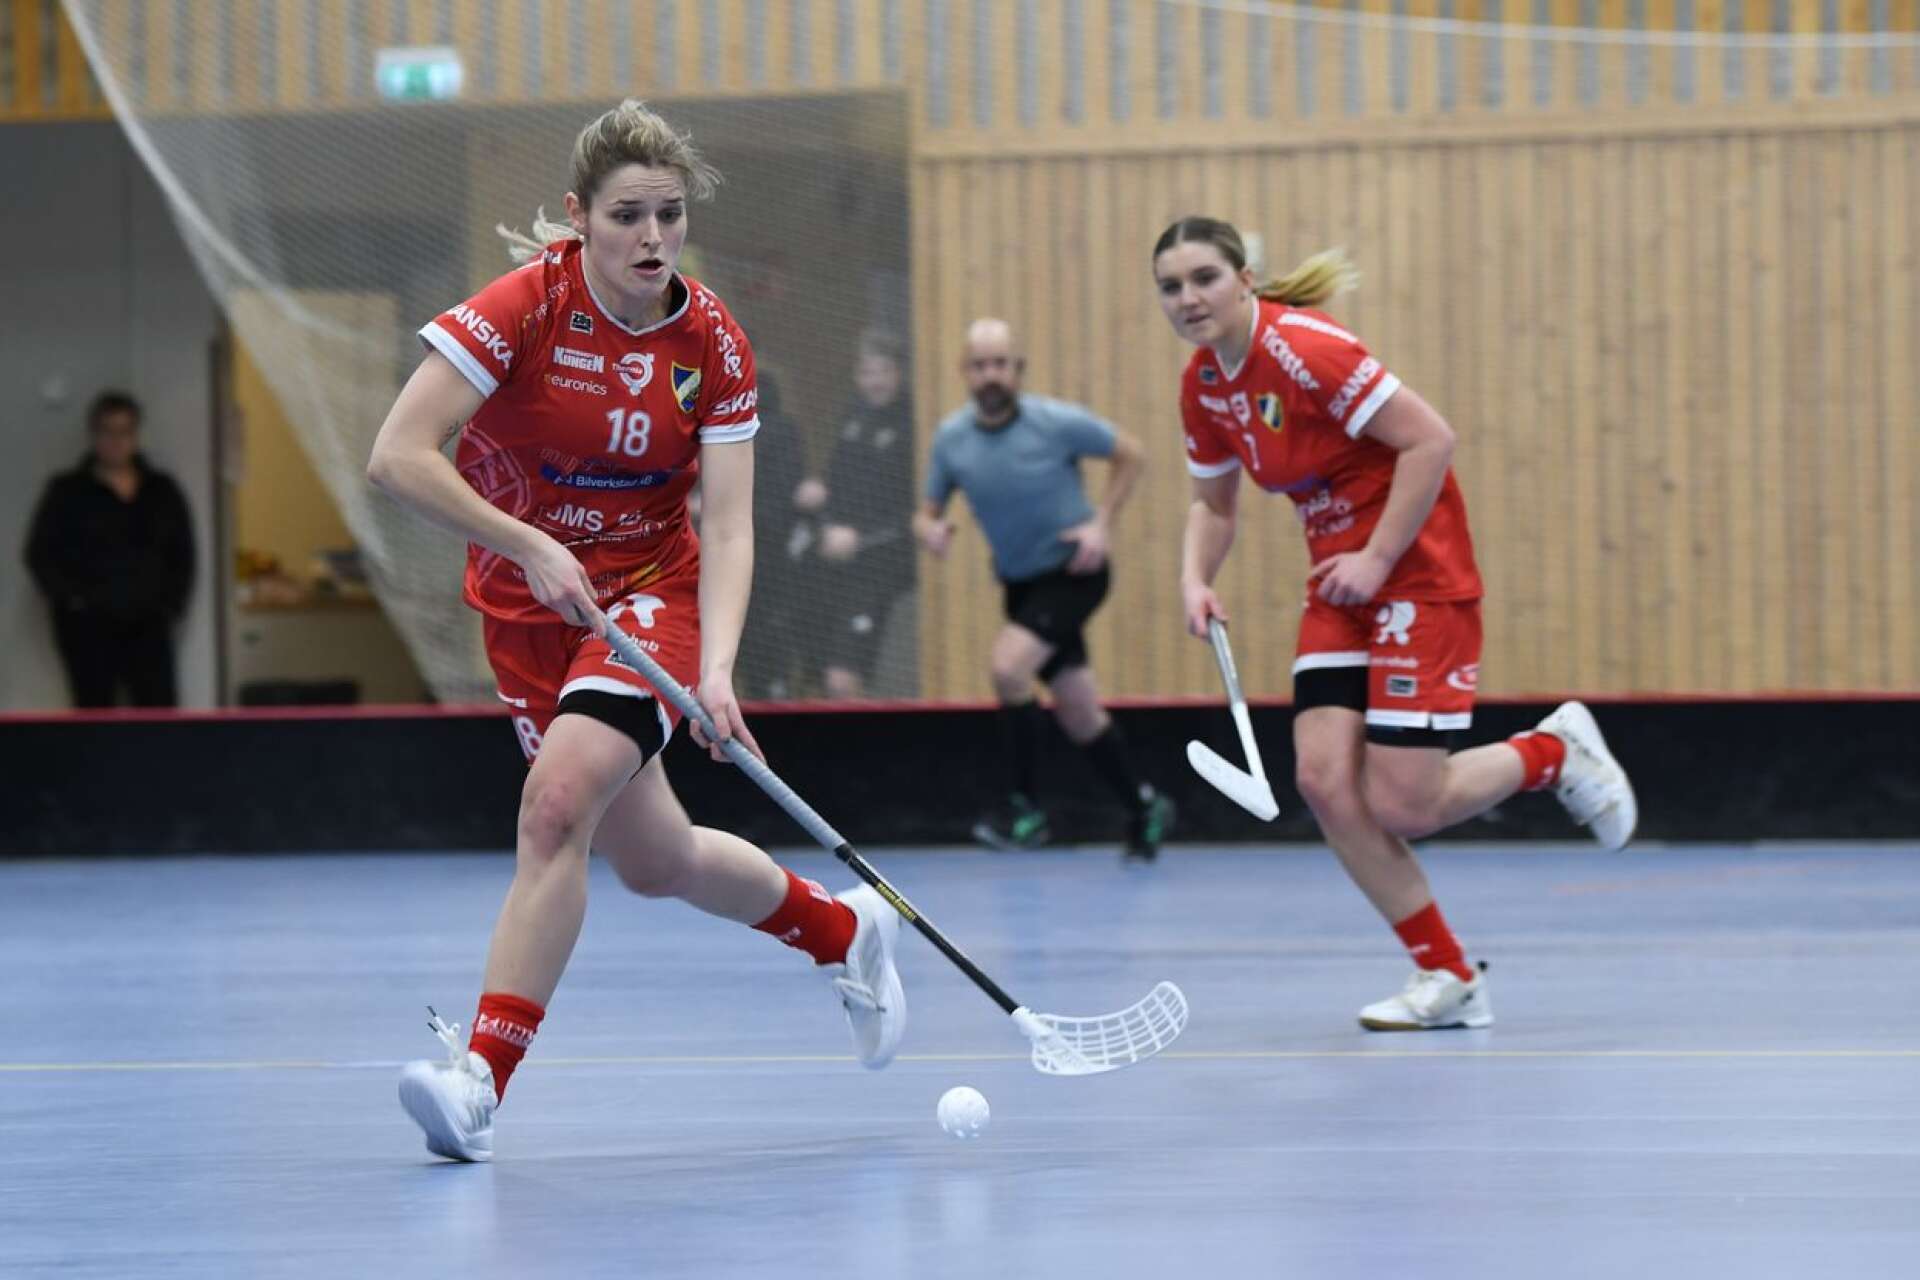 Josefine Holmqvist-Göthberg stängde matchen definitivt med sina två mål i tredje perioden. Clara Mossberg, som syns i bakgrunden, svarade för ett mål och två assist.